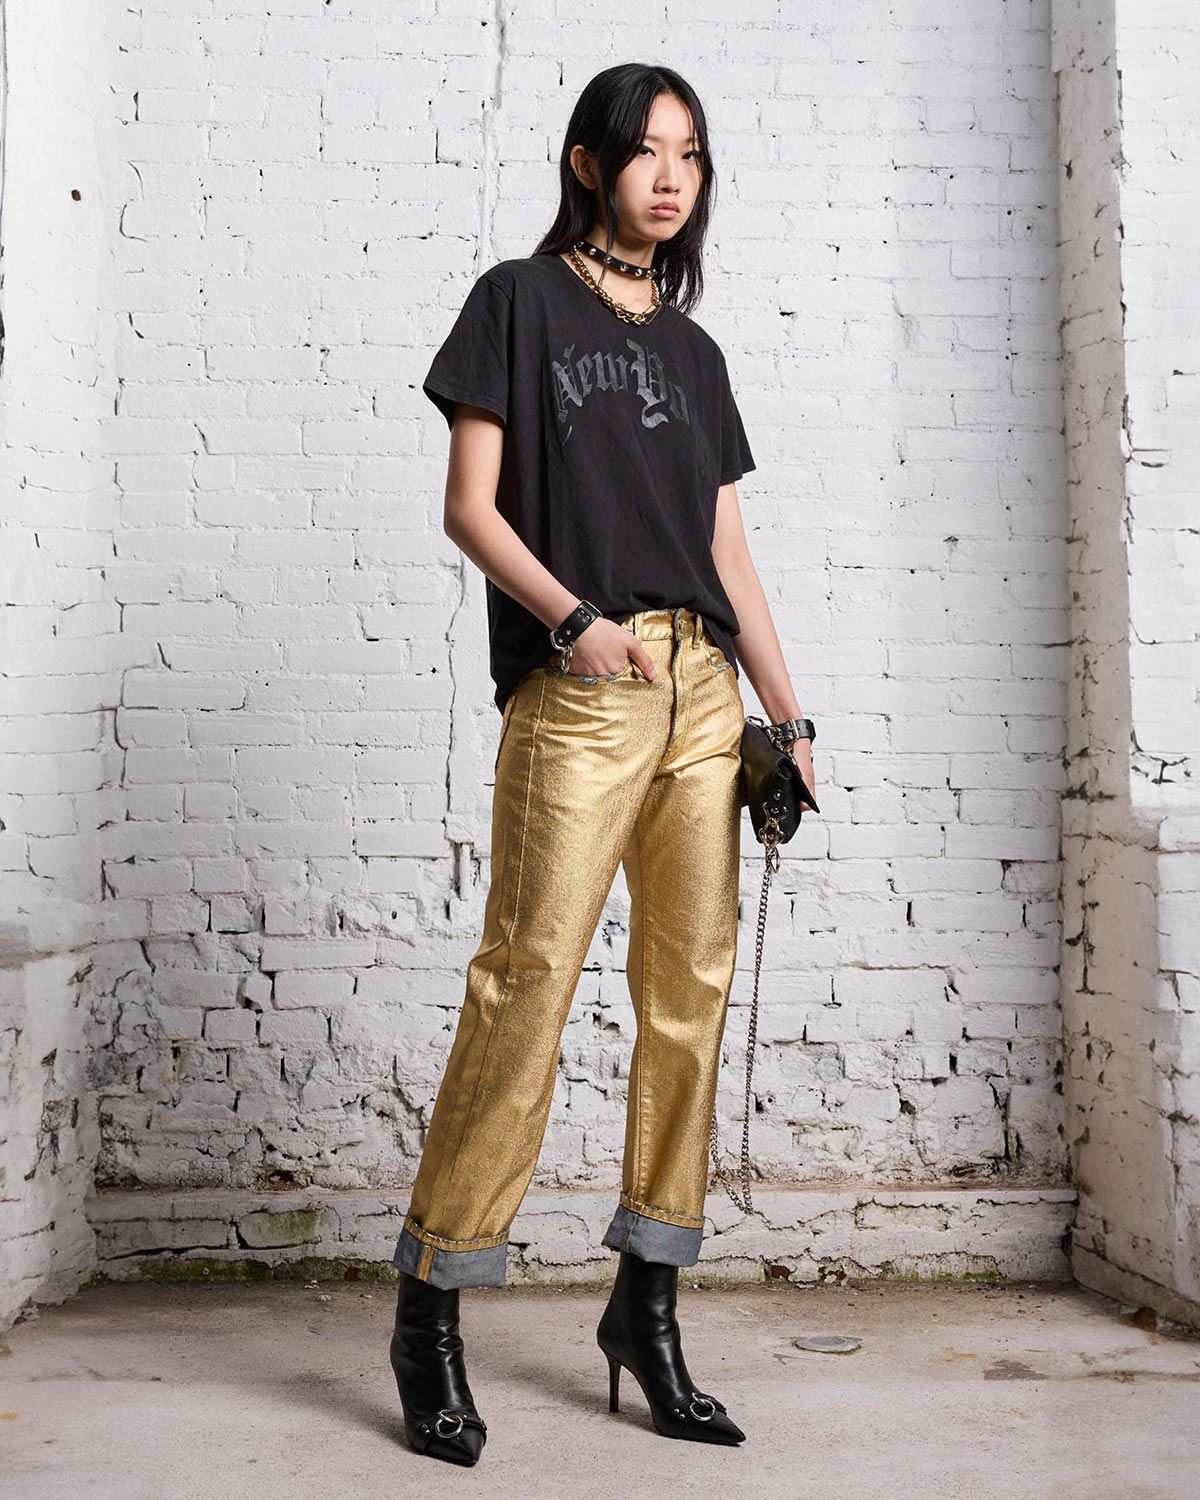 Tee-shirt manches courtes en coton noir sérigraphie New-York R13. Porté avec un pantalon lamé doré.